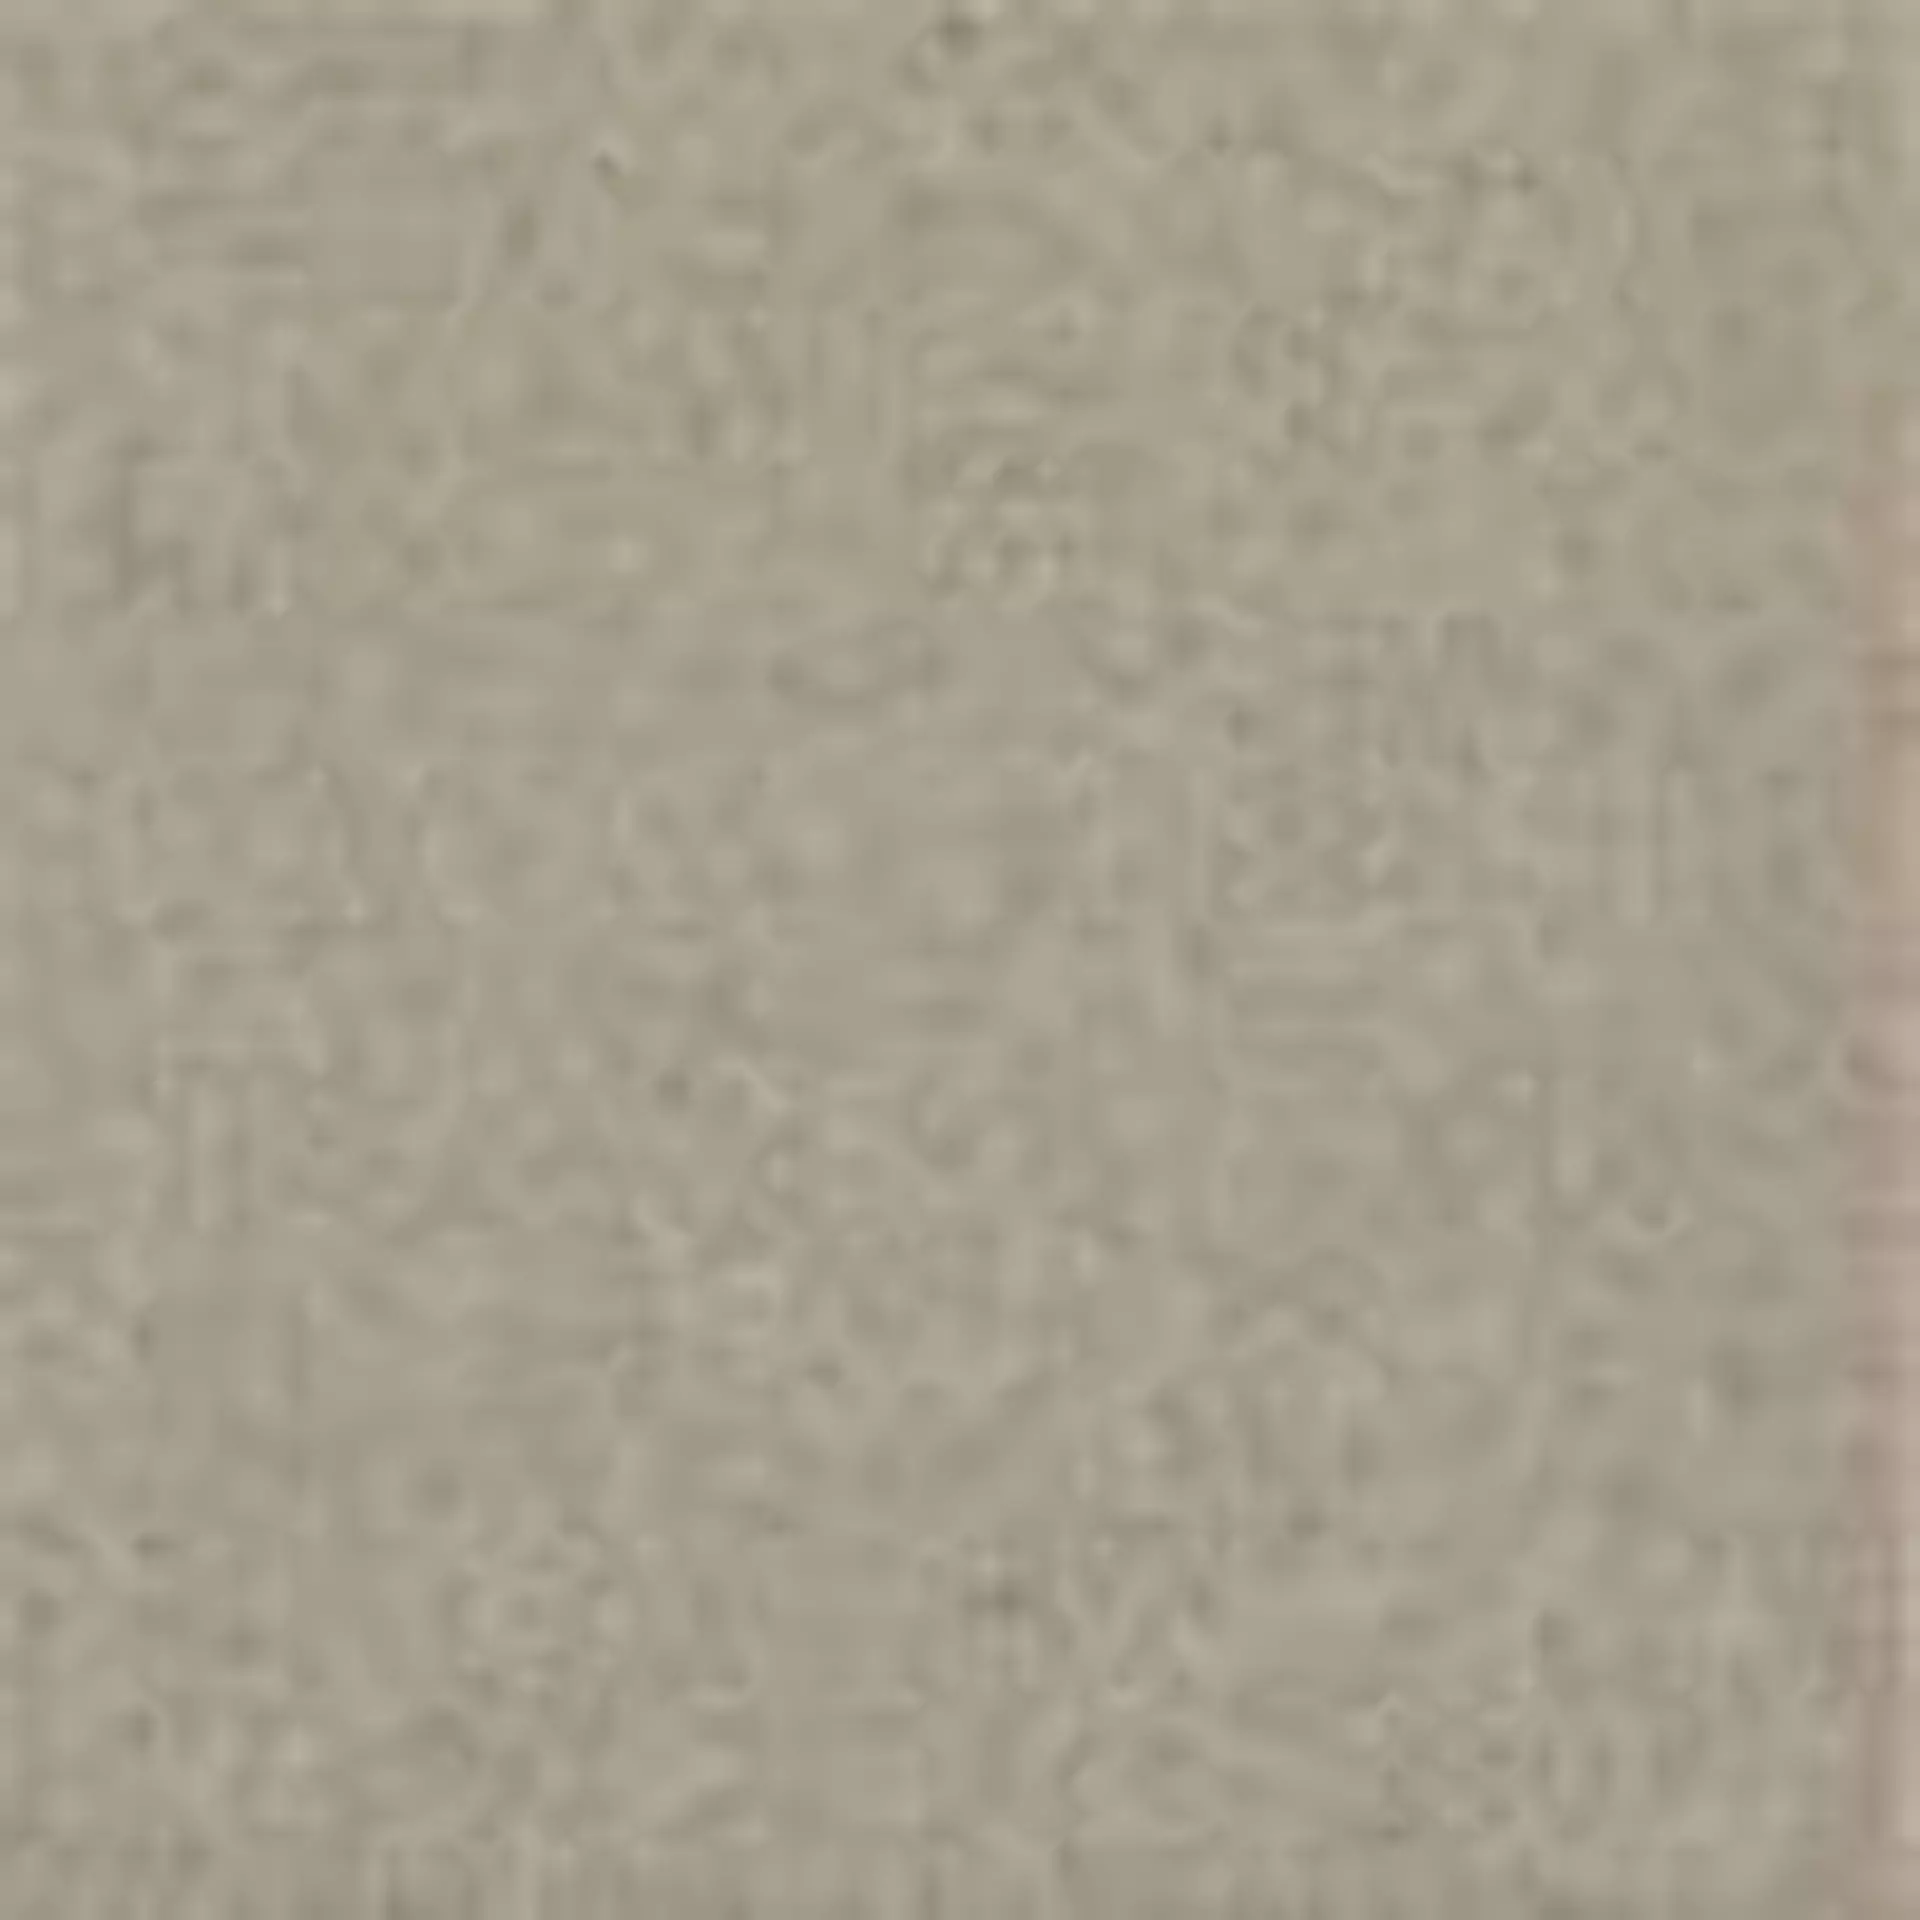 Bodenfliese,Wandfliese Marazzi Sistemt Graniti Grigio Chiaro Naturale – Matt Grigio Chiaro MRVH matt natur 20x20cm 12mm